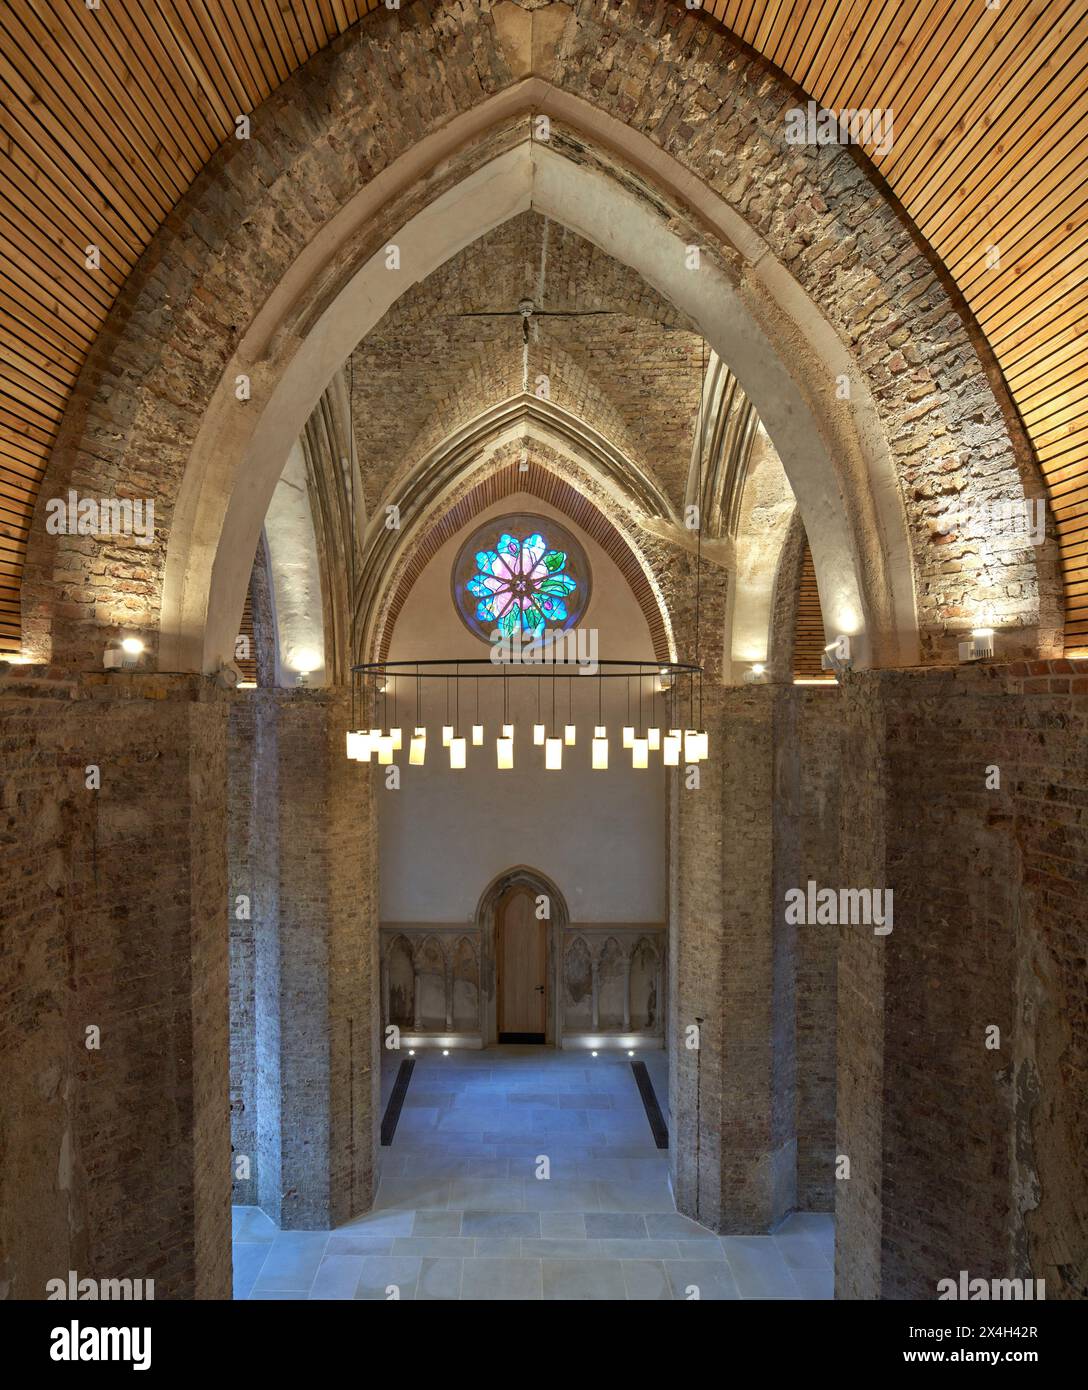 Élévation intérieure avec arcs gothiques et lustre. Abney Park Chapel, Londres, Royaume-Uni. Architecte : Kaner Olette Architects, 2023. Banque D'Images